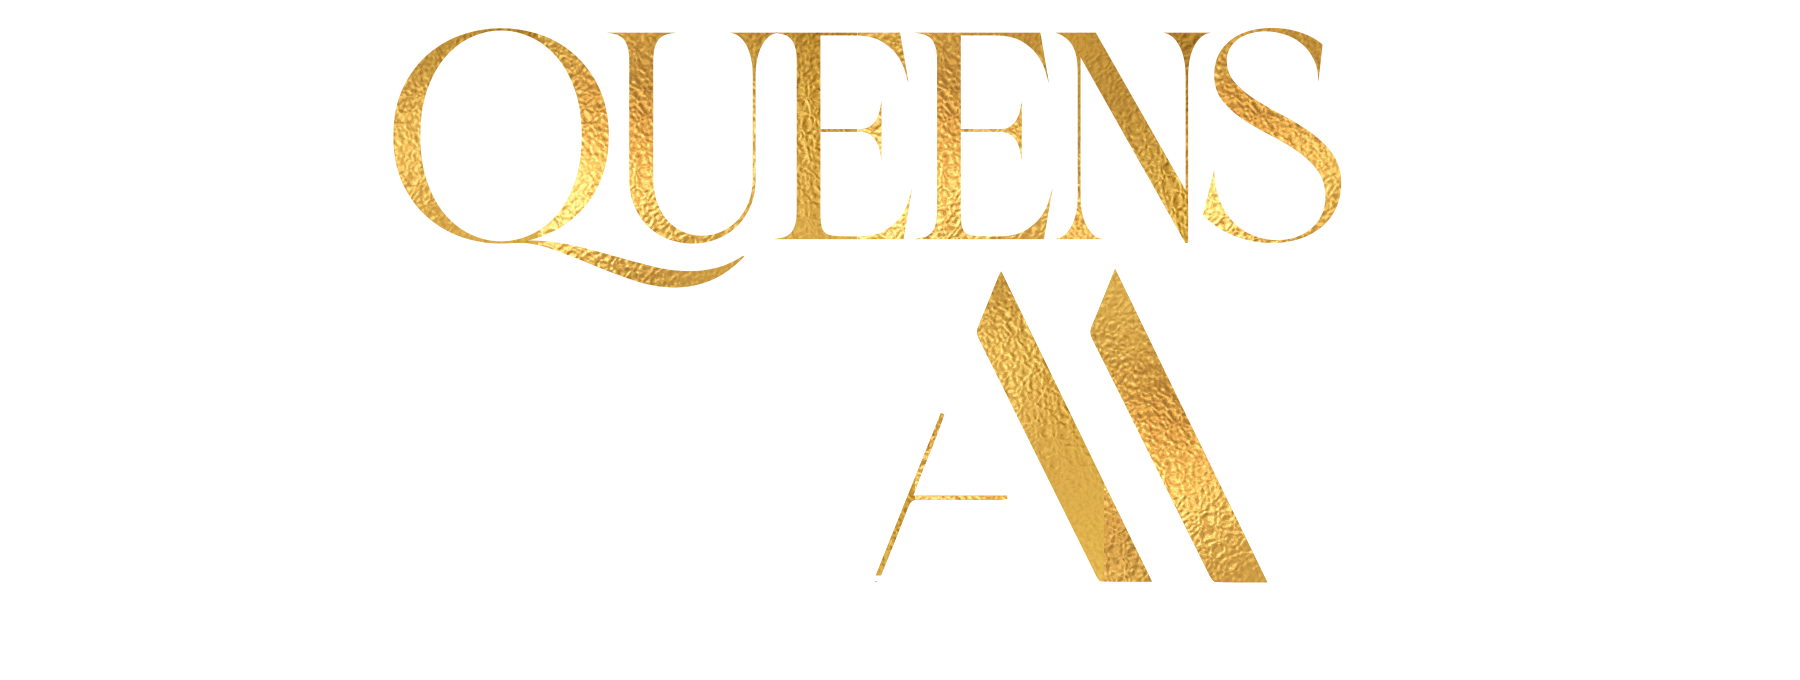 Queens Bazaar